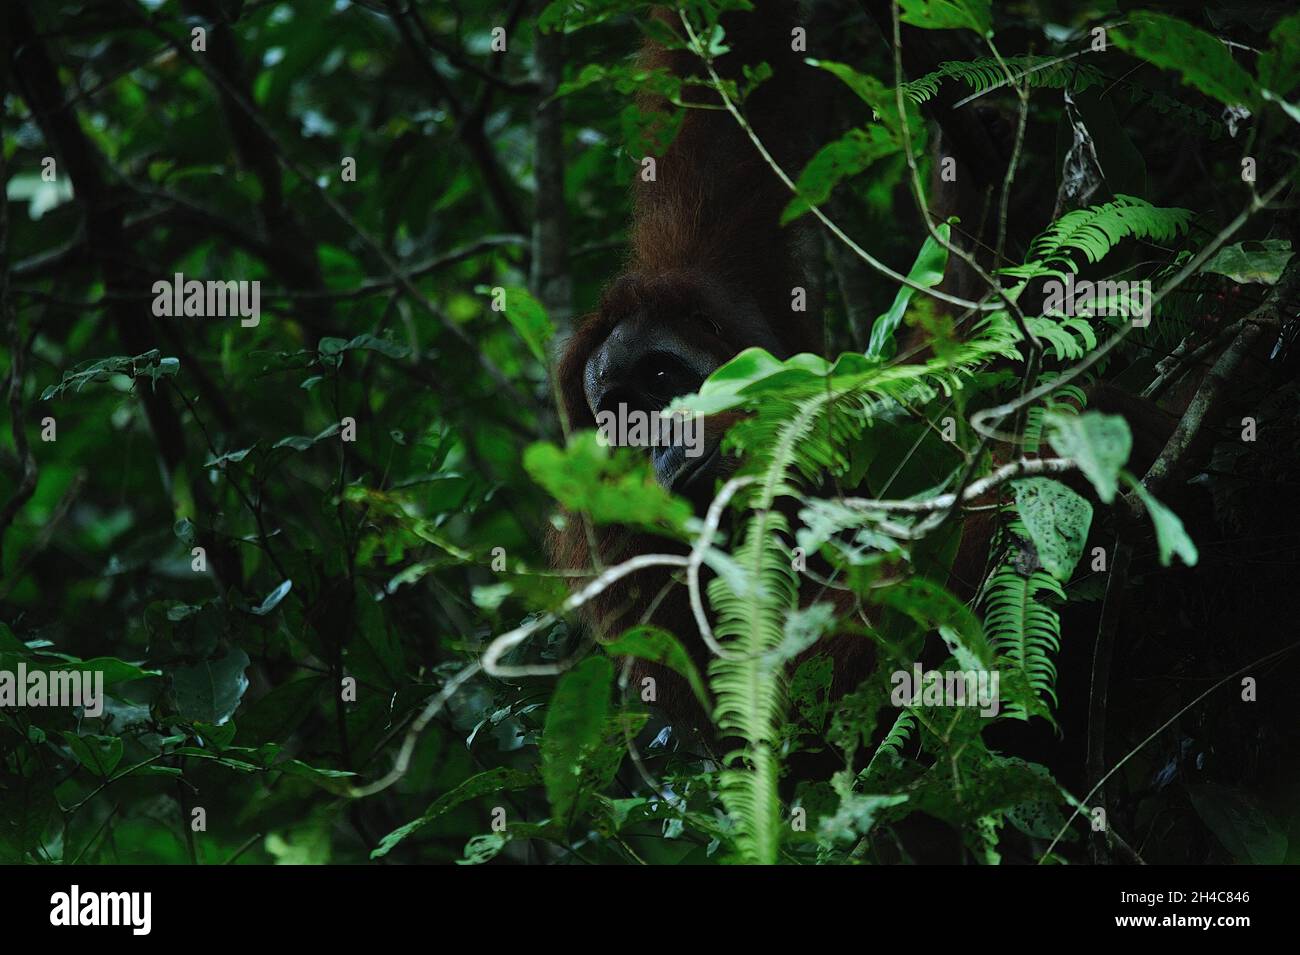 Attività selvatiche dell'orangutano Sumatran (Pongo abelii) viste all'interno della zona cuscinetto del Parco Nazionale dei Leuser di Gunung a Sungai Landak, Bahorok, Sumatra settentrionale, Indonesia il 31 ottobre 2021. La nuova ricerca di un team internazionale di scienziati, guidata dalla Washington University School of Medicine di St. Louis, ha decodificato, o sequenziato, il DNA di un orangutano Sumatran che dimostra che gli orangutani Sumatran e Bornean divergono circa 400,000 anni fa. Le stime precedenti avevano messo la divisione a circa 1 milione di anni fa. Oggi, solo circa 50,000 orangutani borneani e 7,000 Sumatran vivono ancora nella natura selvaggia. Connes Foto Stock